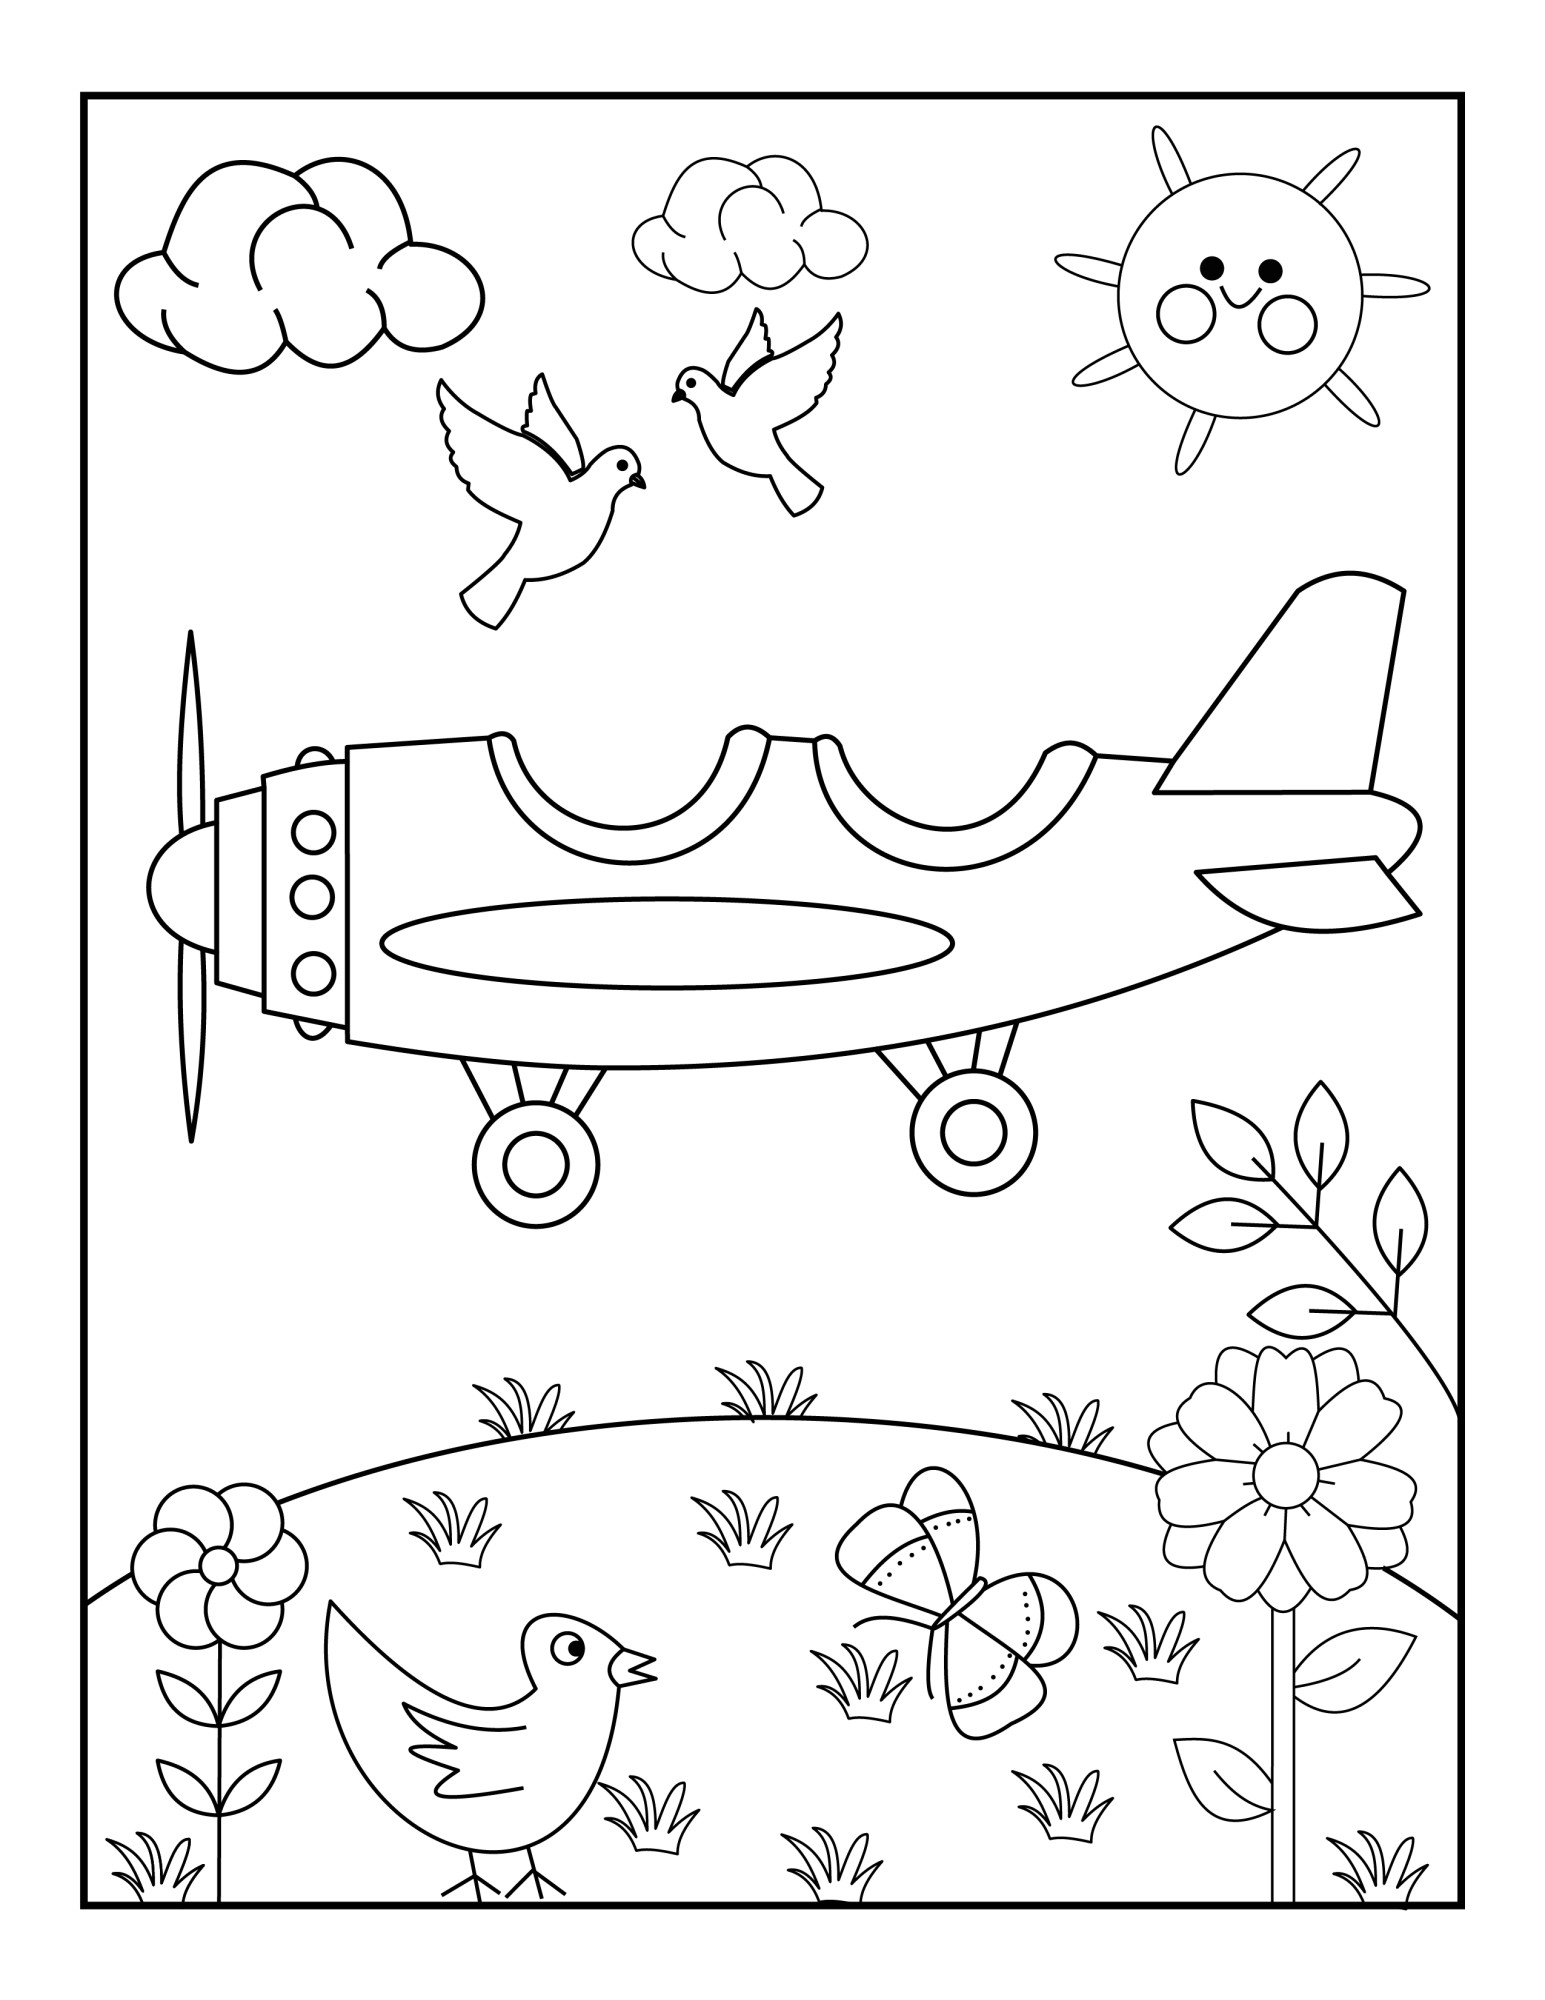 Раскраска для детей: игрушечное воздушное судно над лужайкой